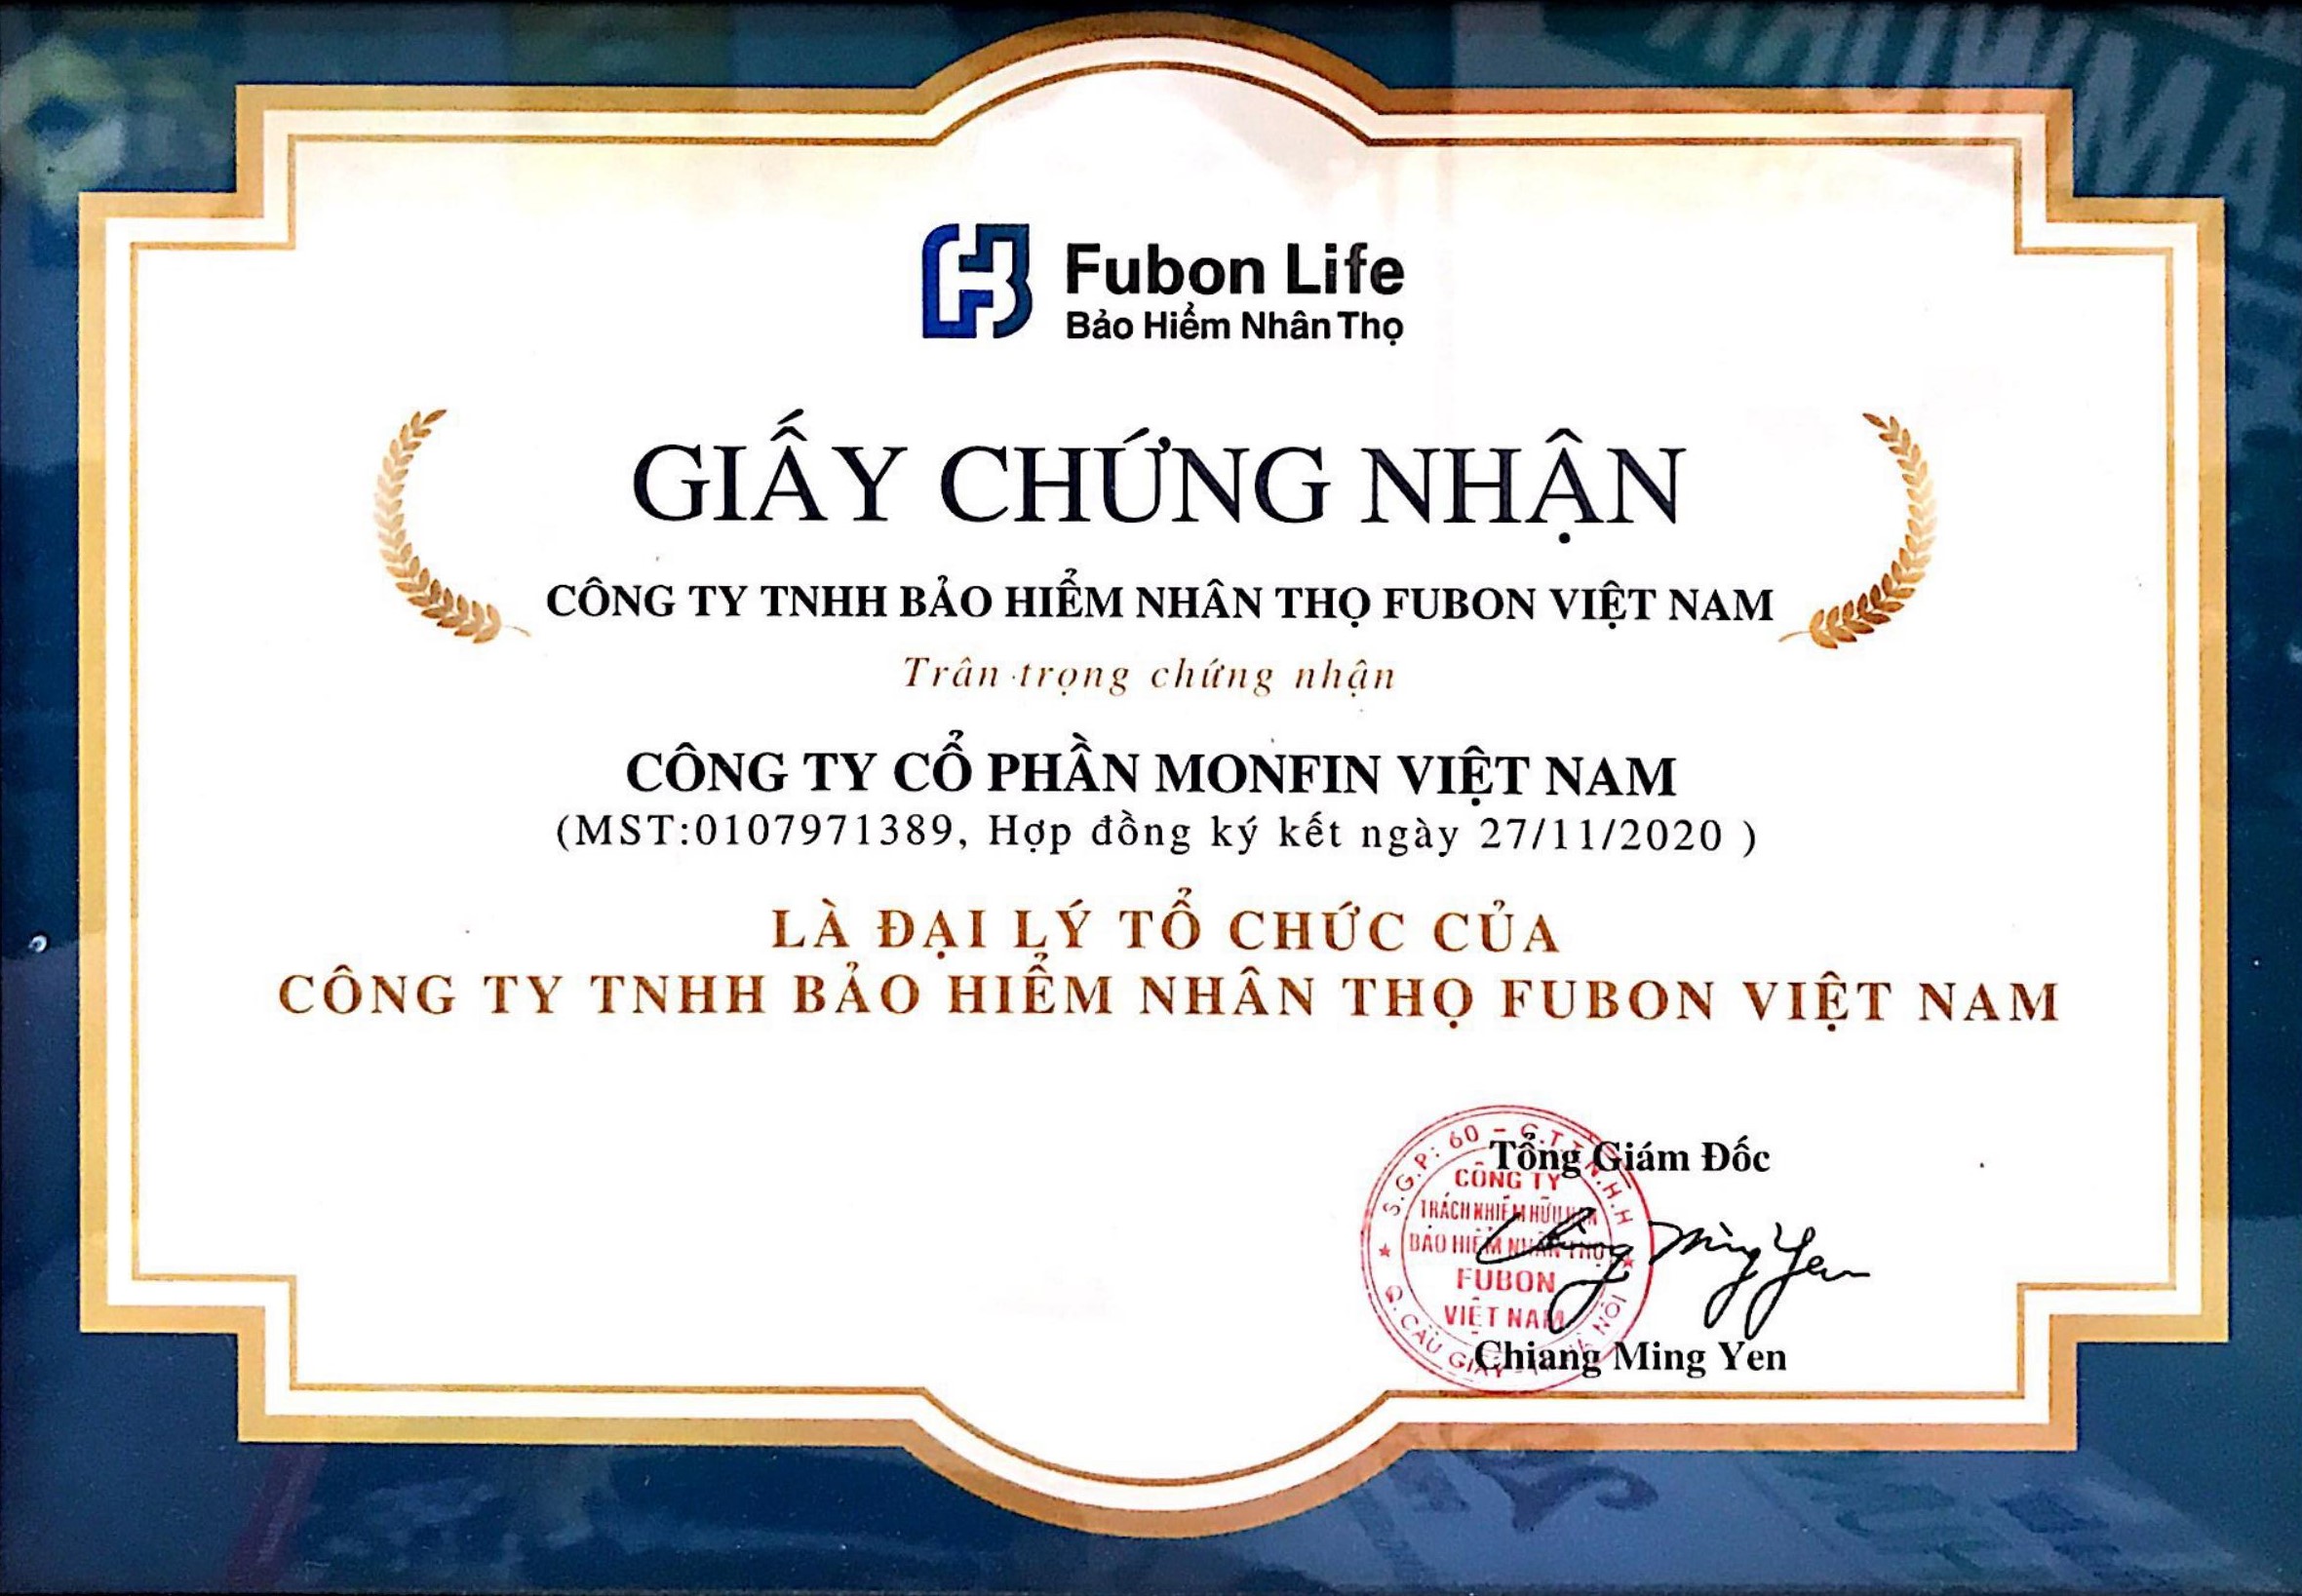 Monfin đồng hành cùng bảo hiểm nhân thọ Fubon Life trên hành trình chăm sóc khách hàng